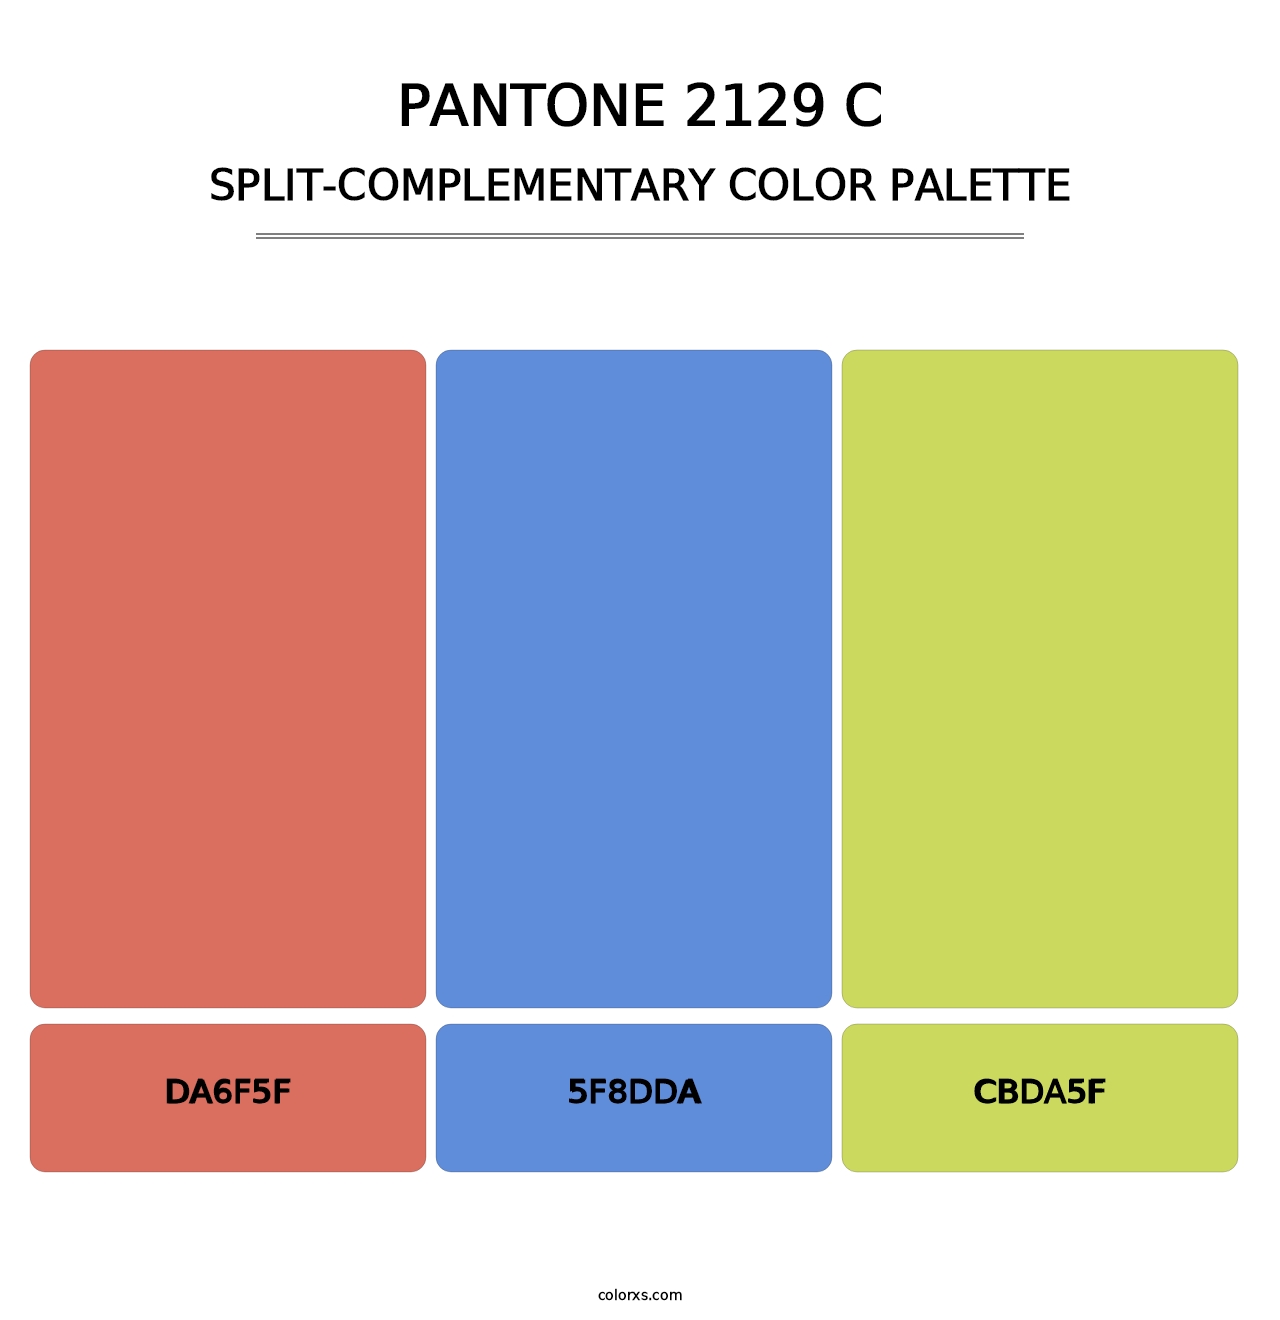 PANTONE 2129 C - Split-Complementary Color Palette